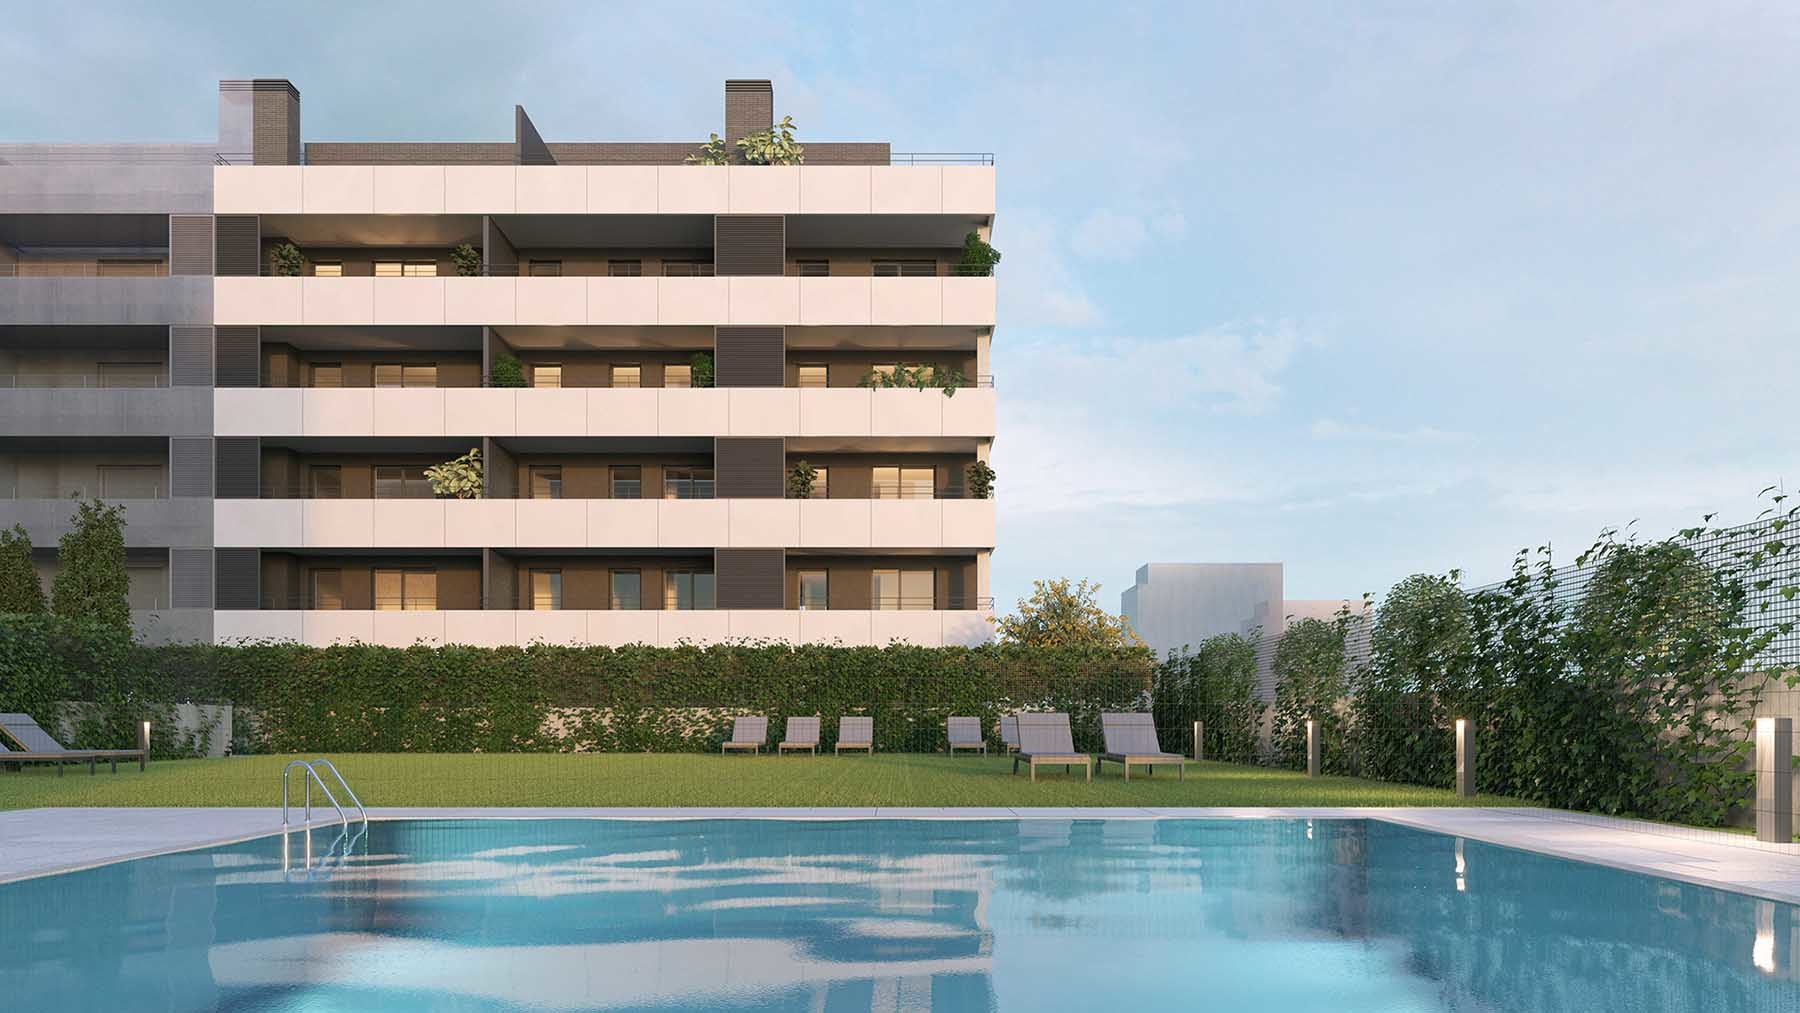 Las nuevas viviendas en Tudela que enamoran con su piscina y jardín comunitario